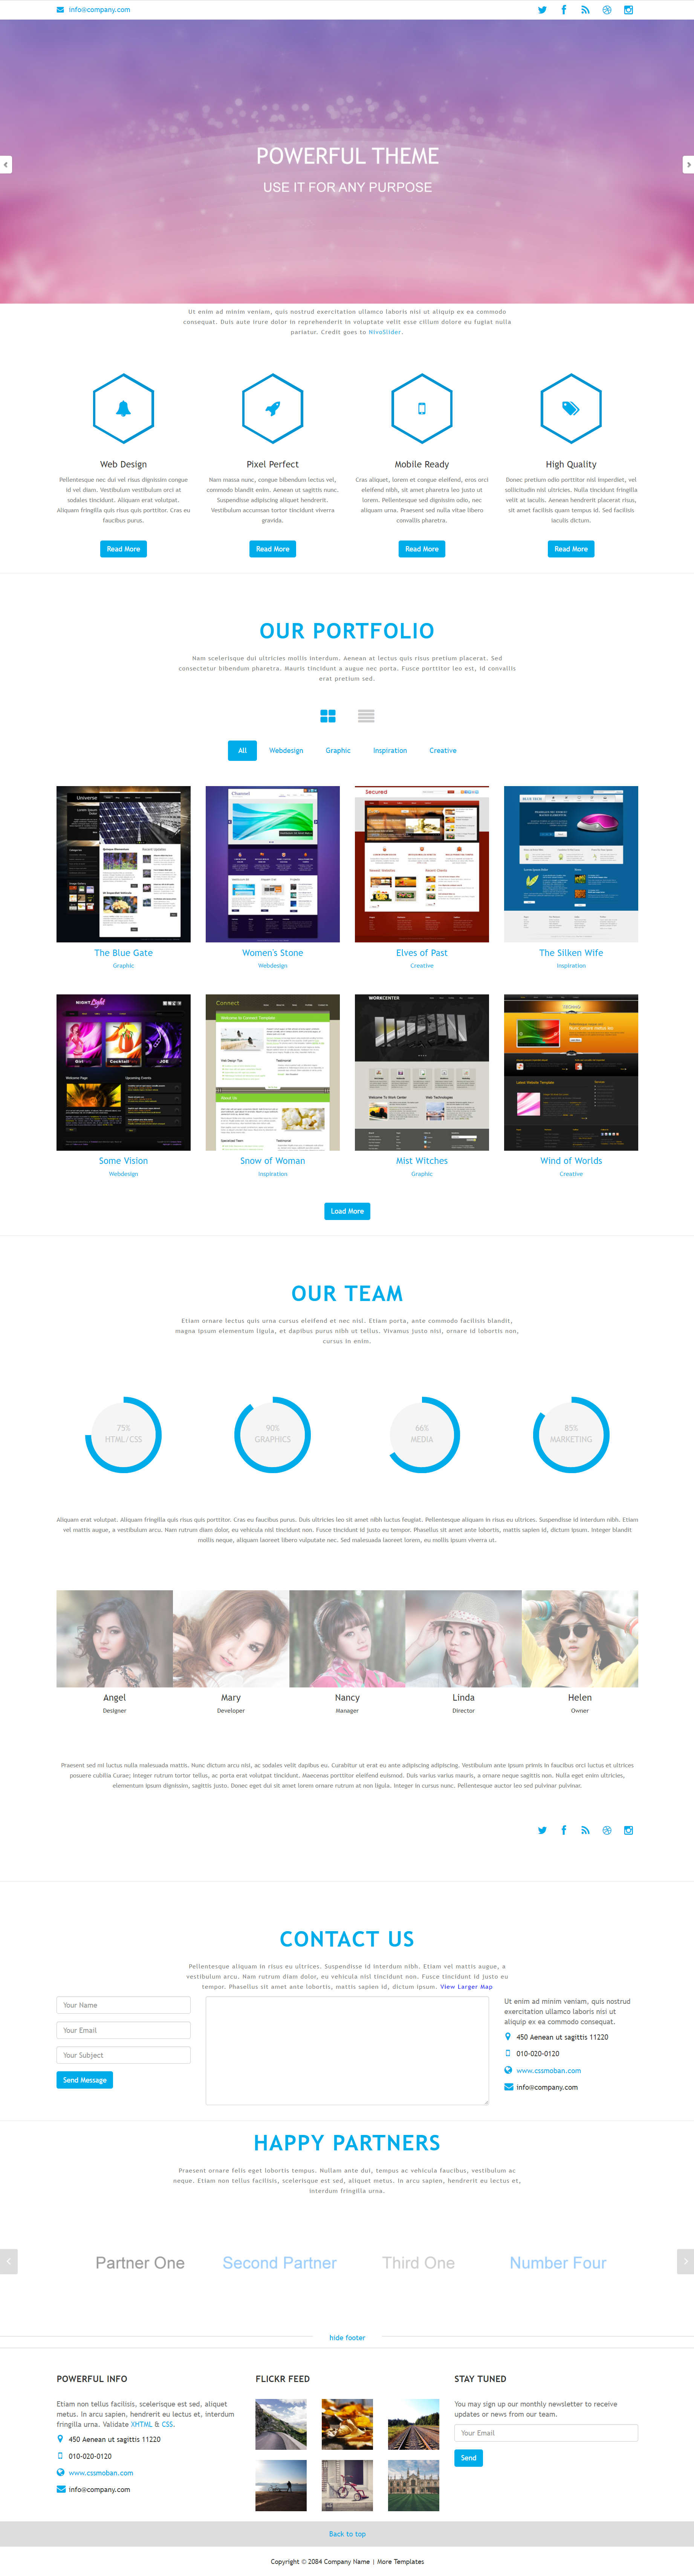 蓝色简洁大气的建站公司网站HTML5模板